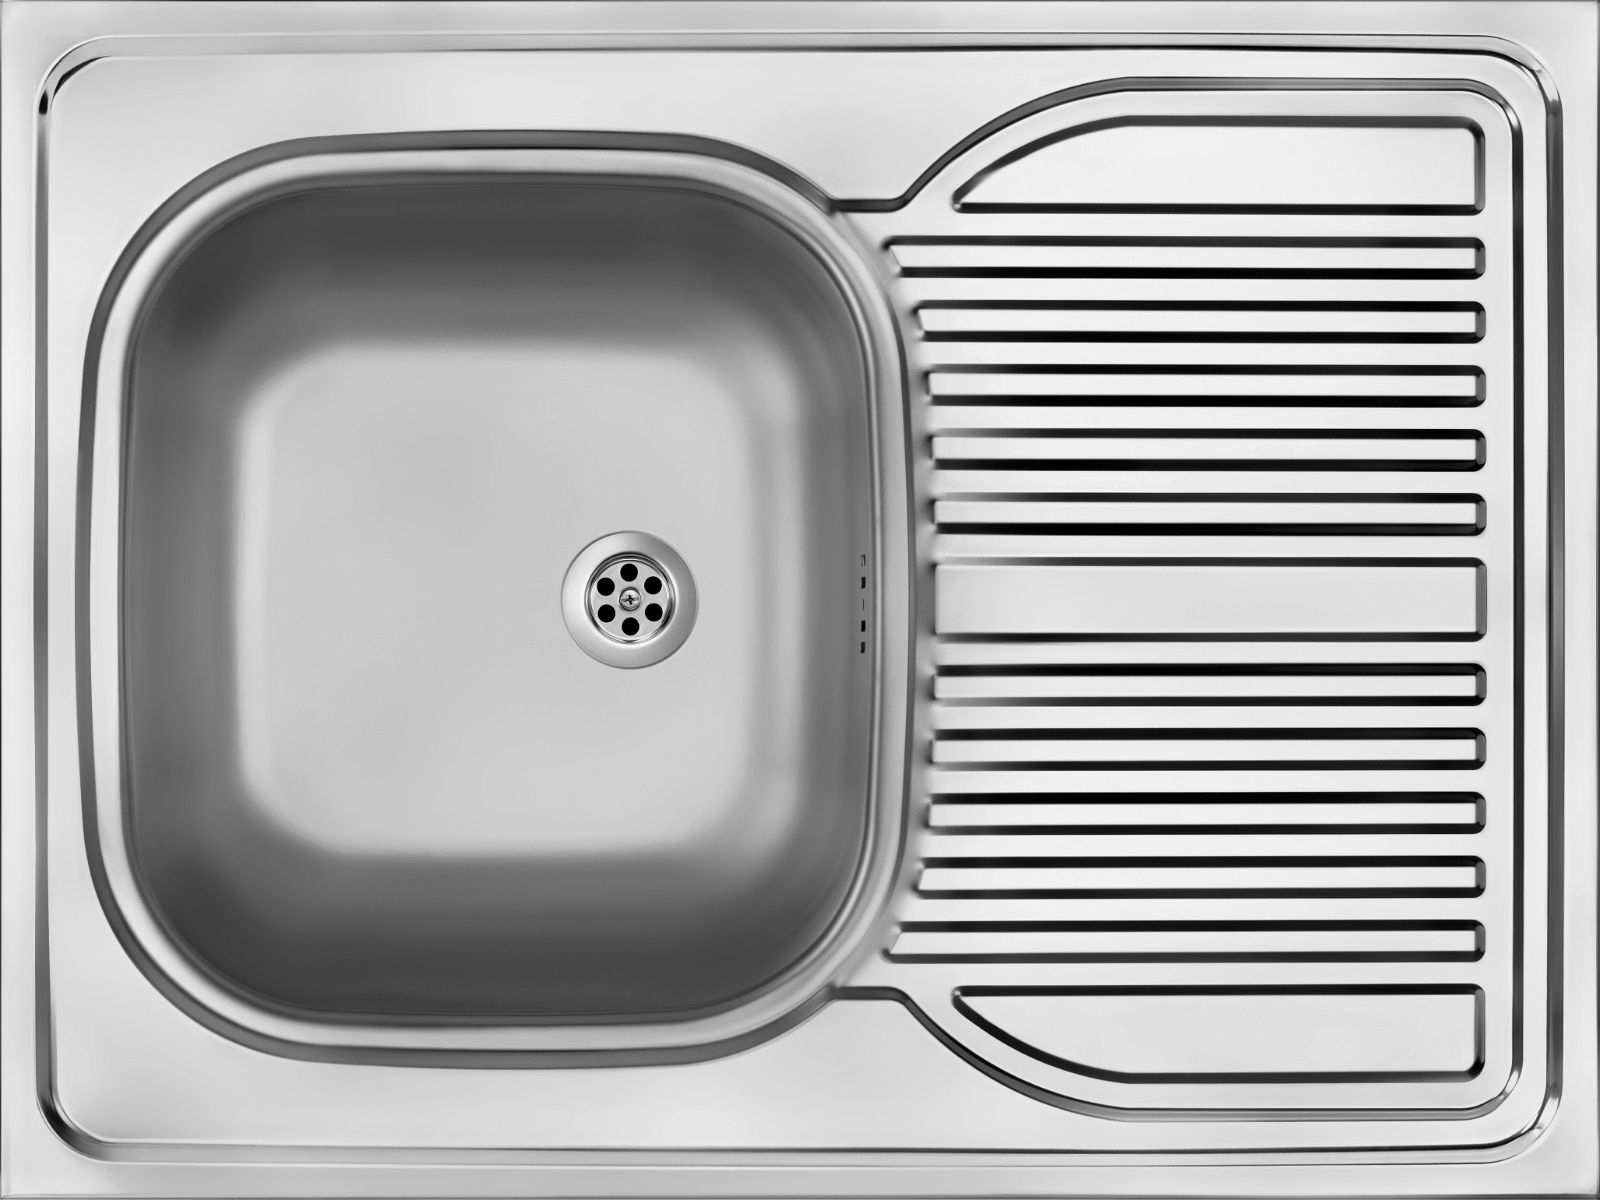 Steel sink, 1-bowl with drainer - lay-on - ZM6_0110 - Główne zdjęcie produktowe